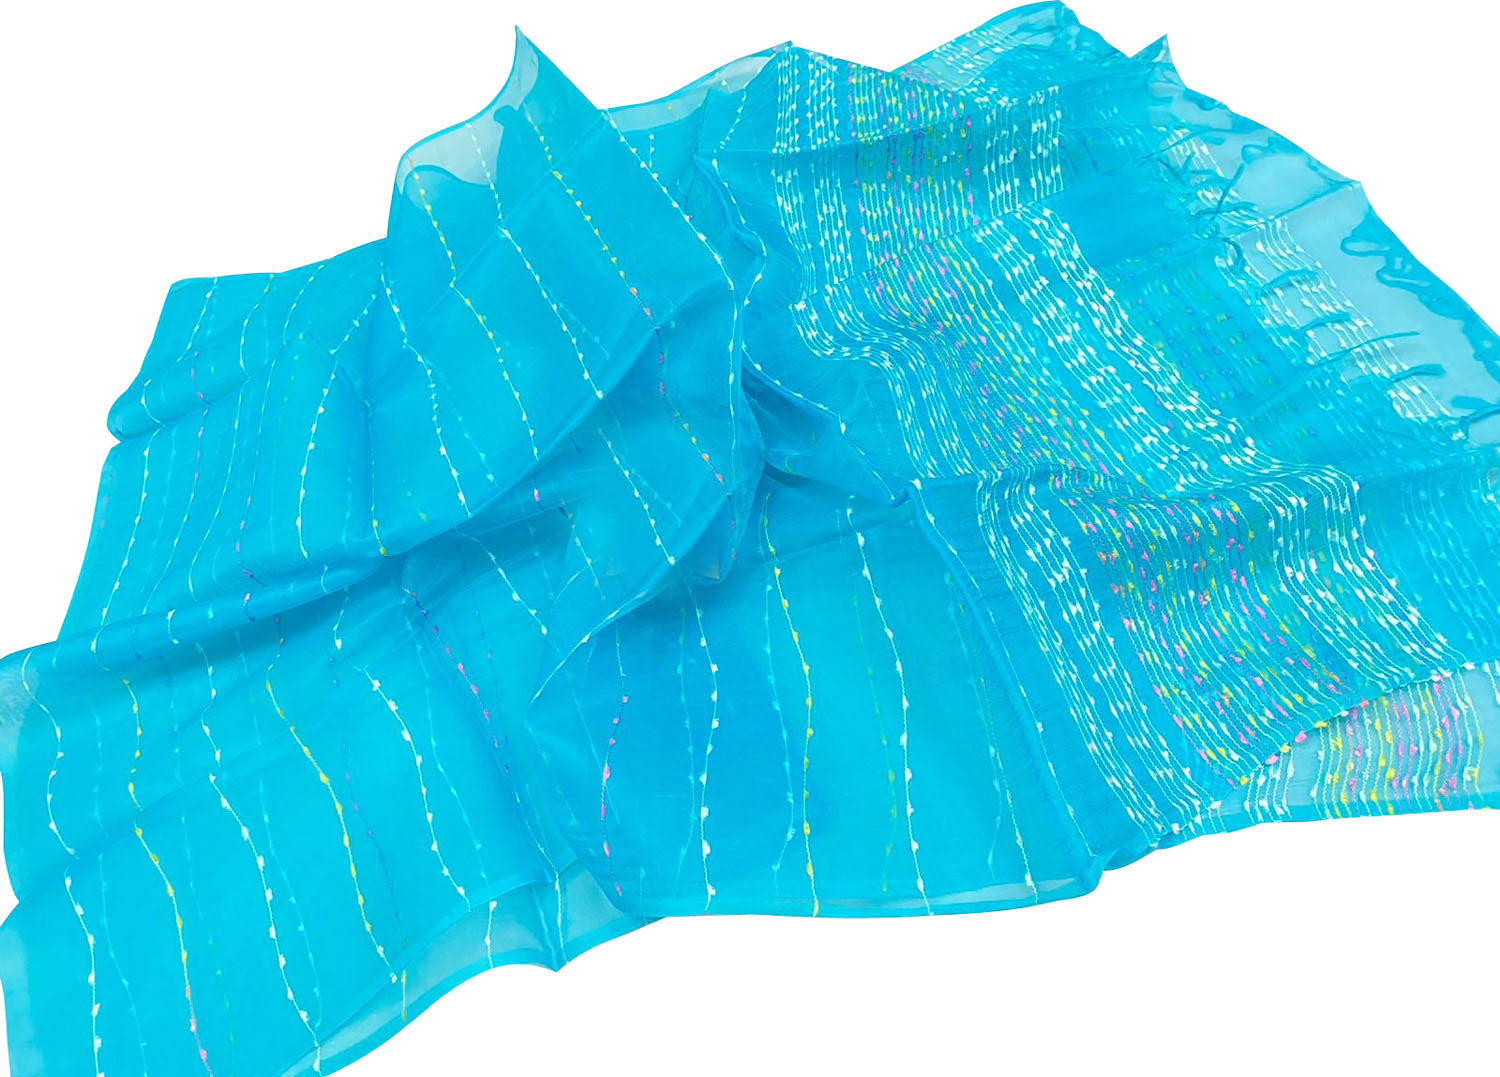 Get the Best Blue Bhagalpur Pure Tussar Silk Dupatta Online - Shop Now! - Luxurion World